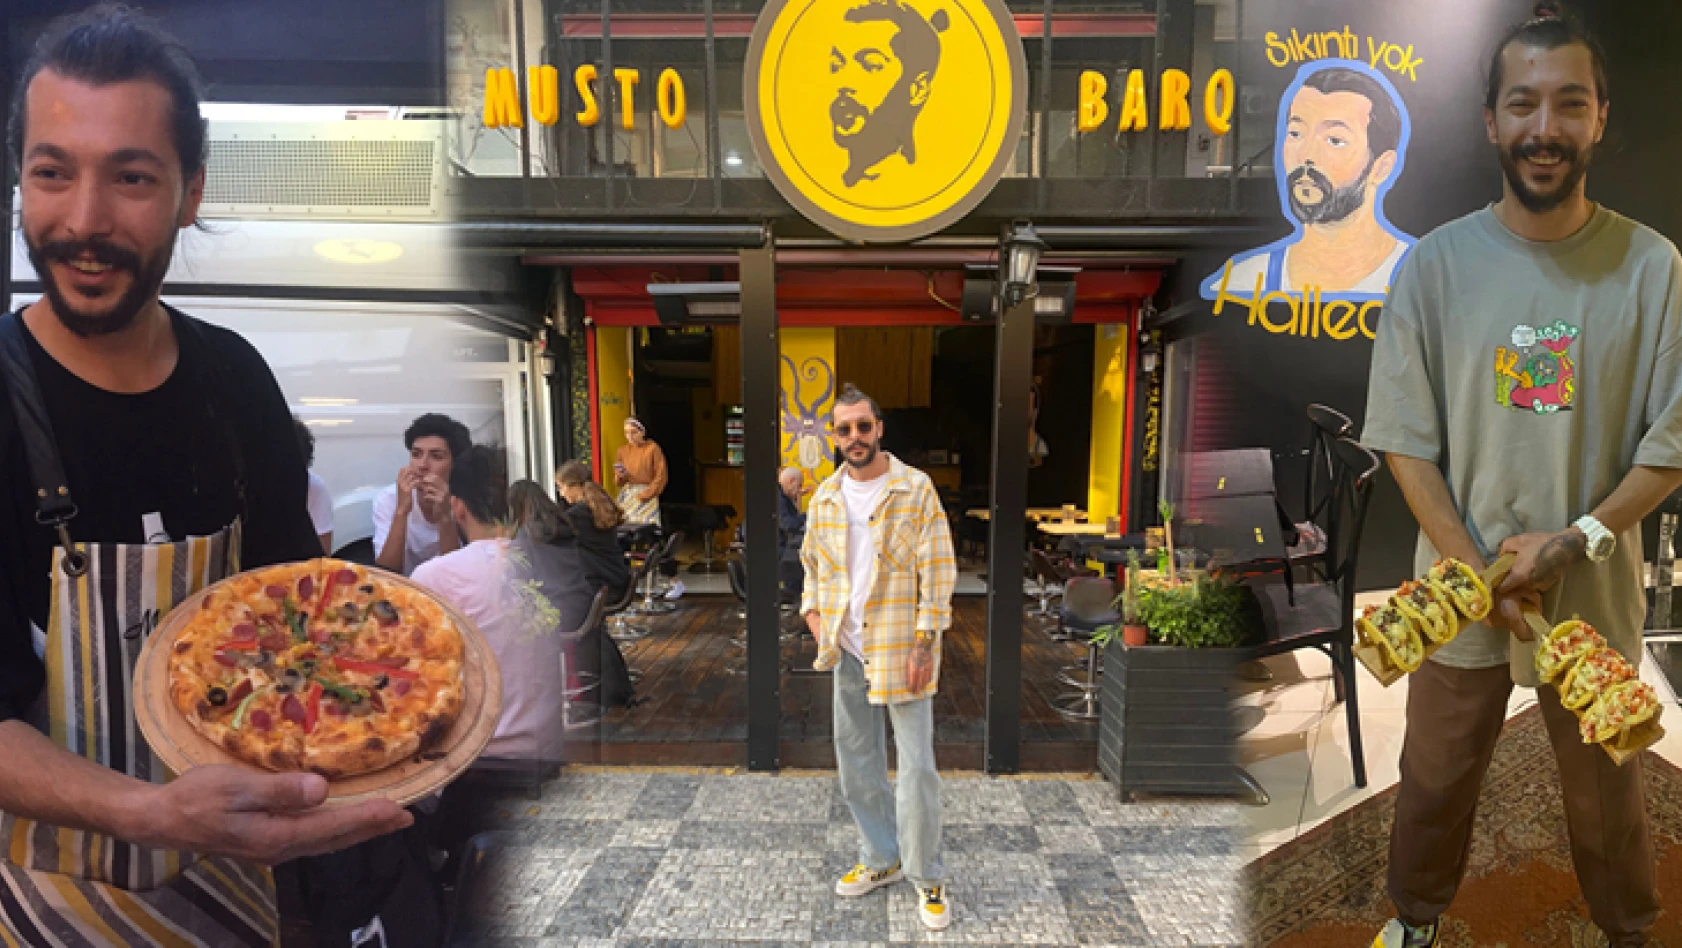 Kadıköy'de sokak lezzetlerinin yeni adresi Mustobarq…